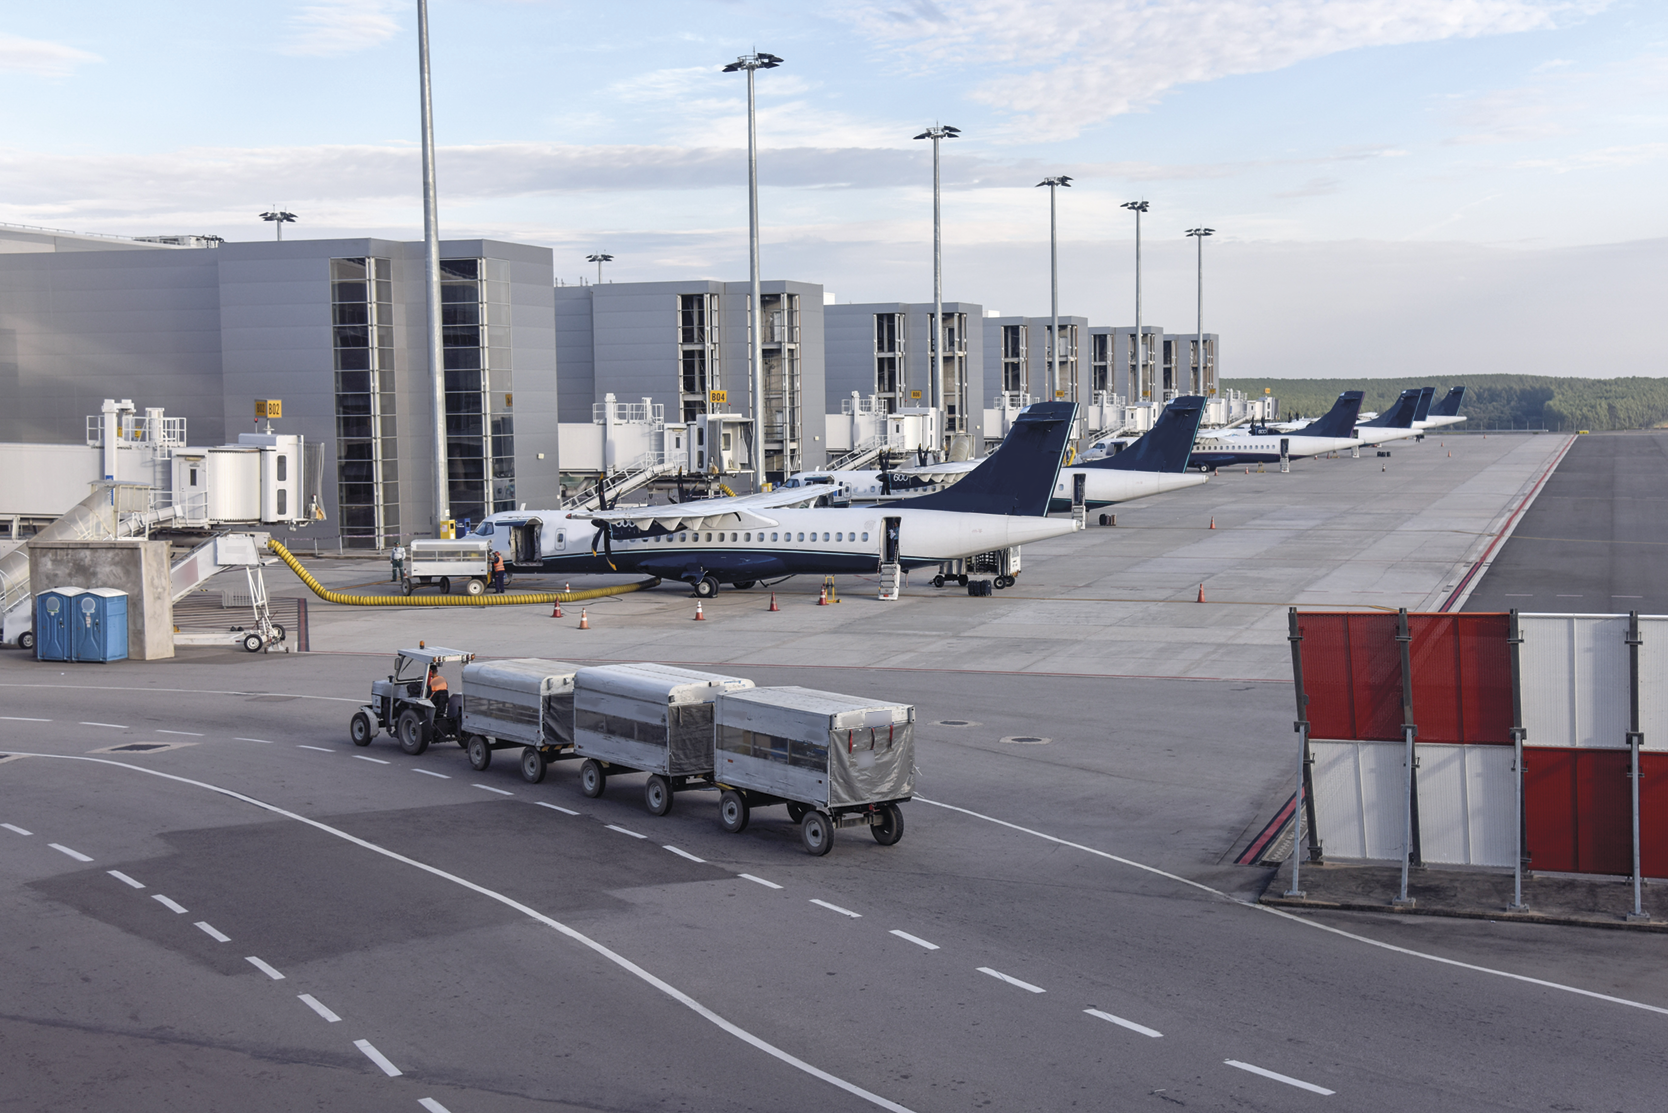 Fotografia. Aeroporto com aviões parados próximos a construções. Há um veículo acoplado a três engates malas na frente.